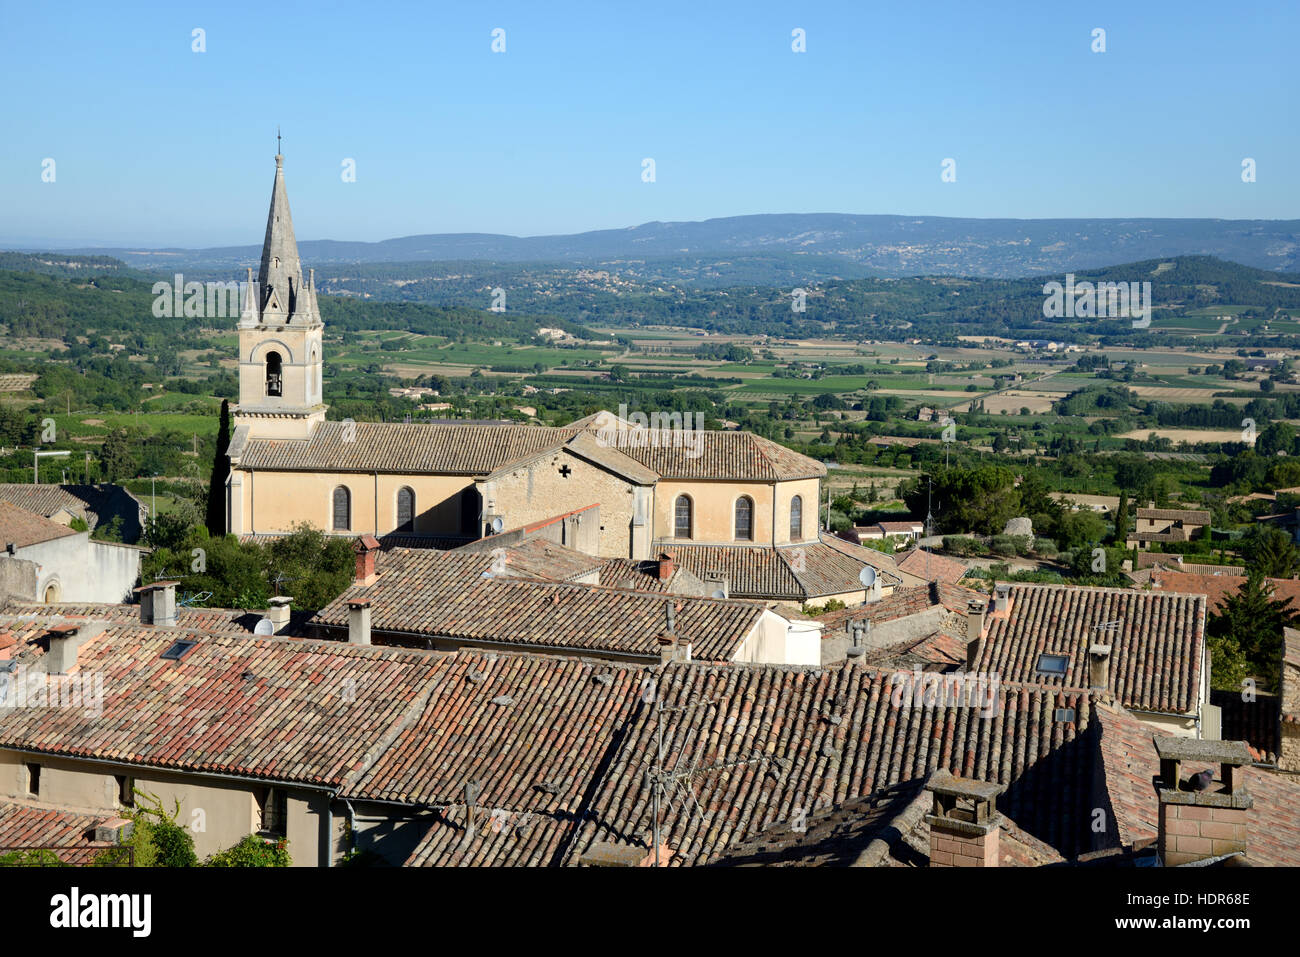 Vue panoramique sur le village de Bonnieux, la nouvelle église et la plaine principale du Parc Régional du Luberon Provence France Banque D'Images